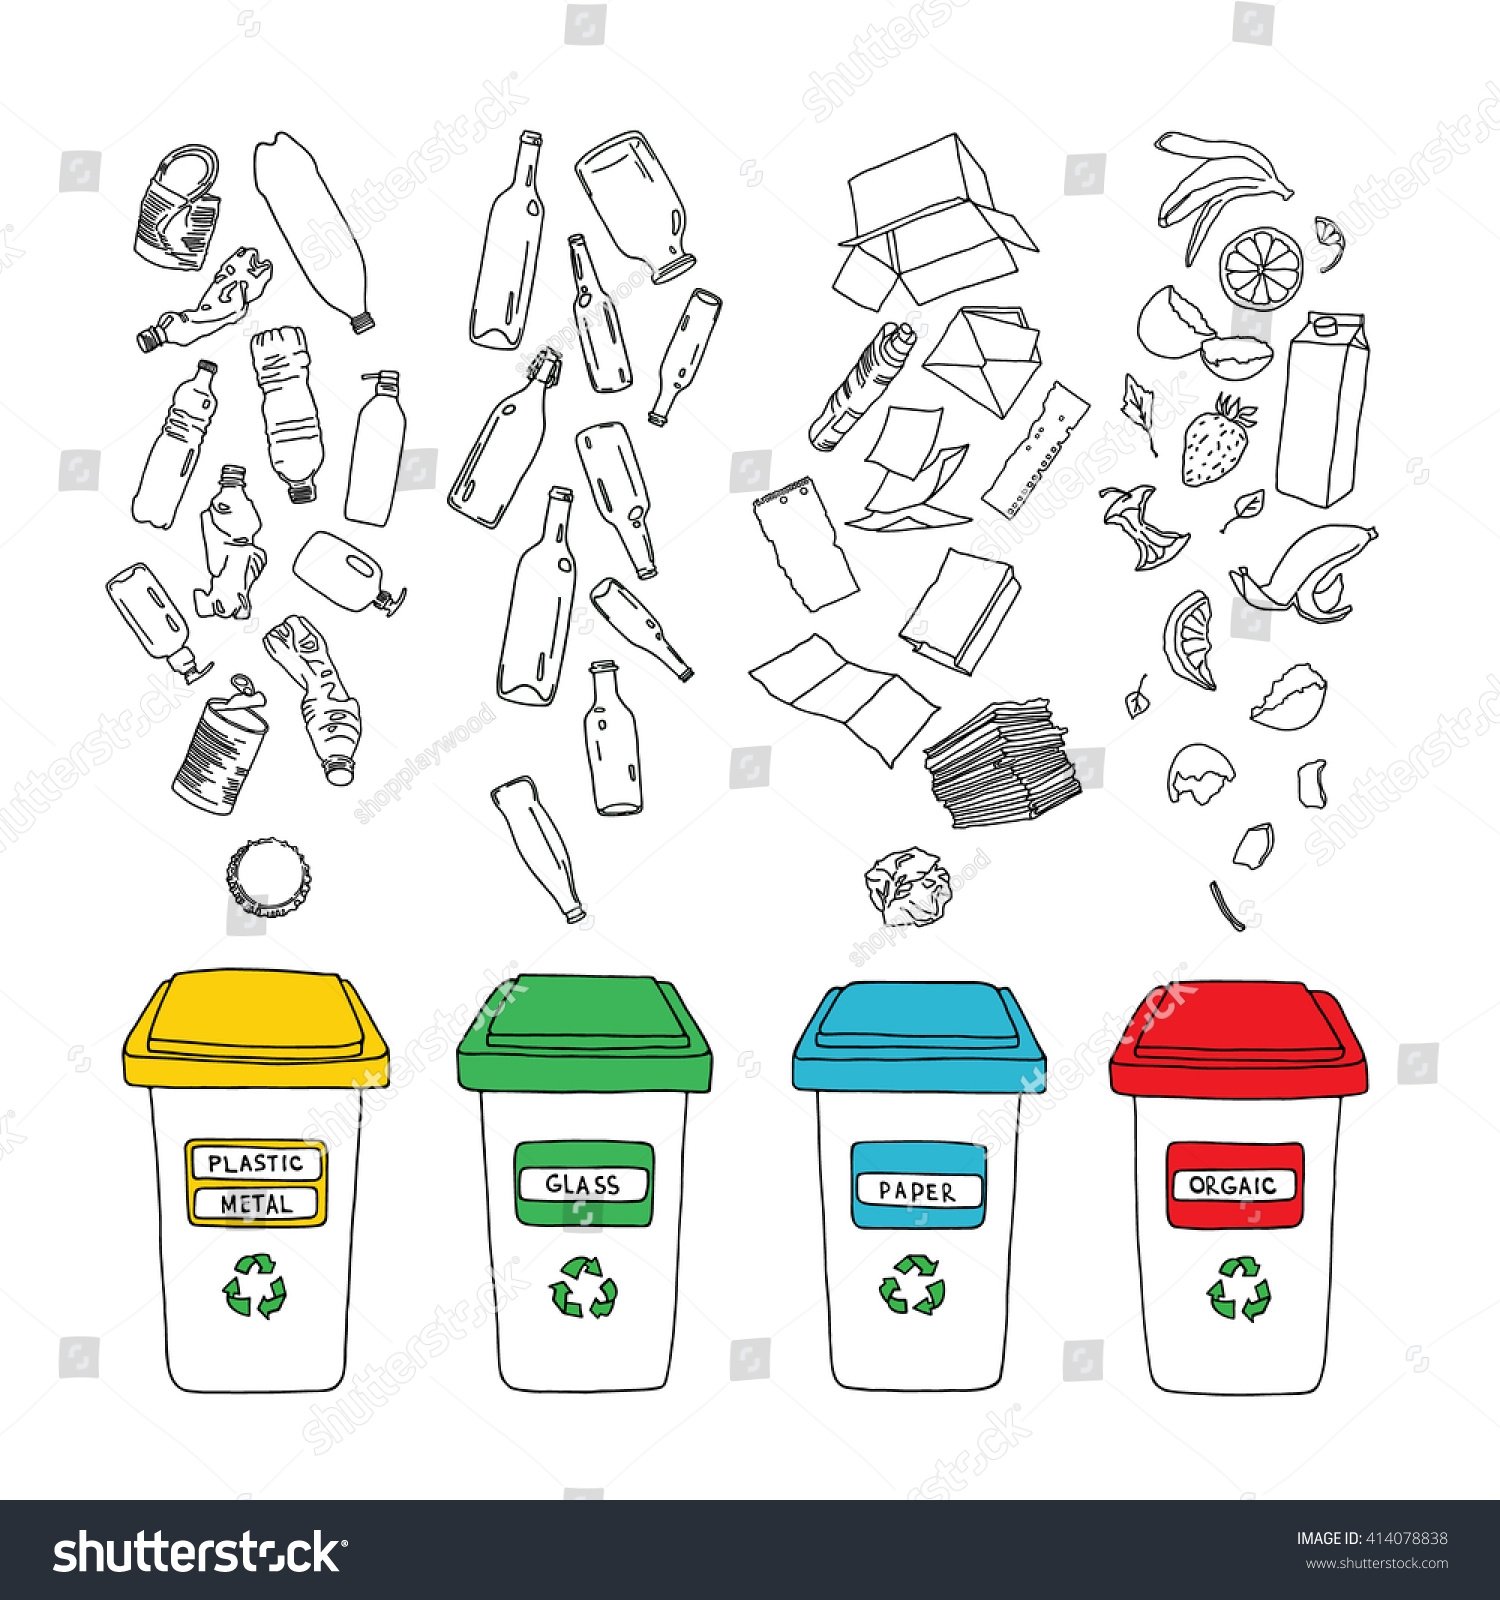 Раздельный сбор мусора раскраска